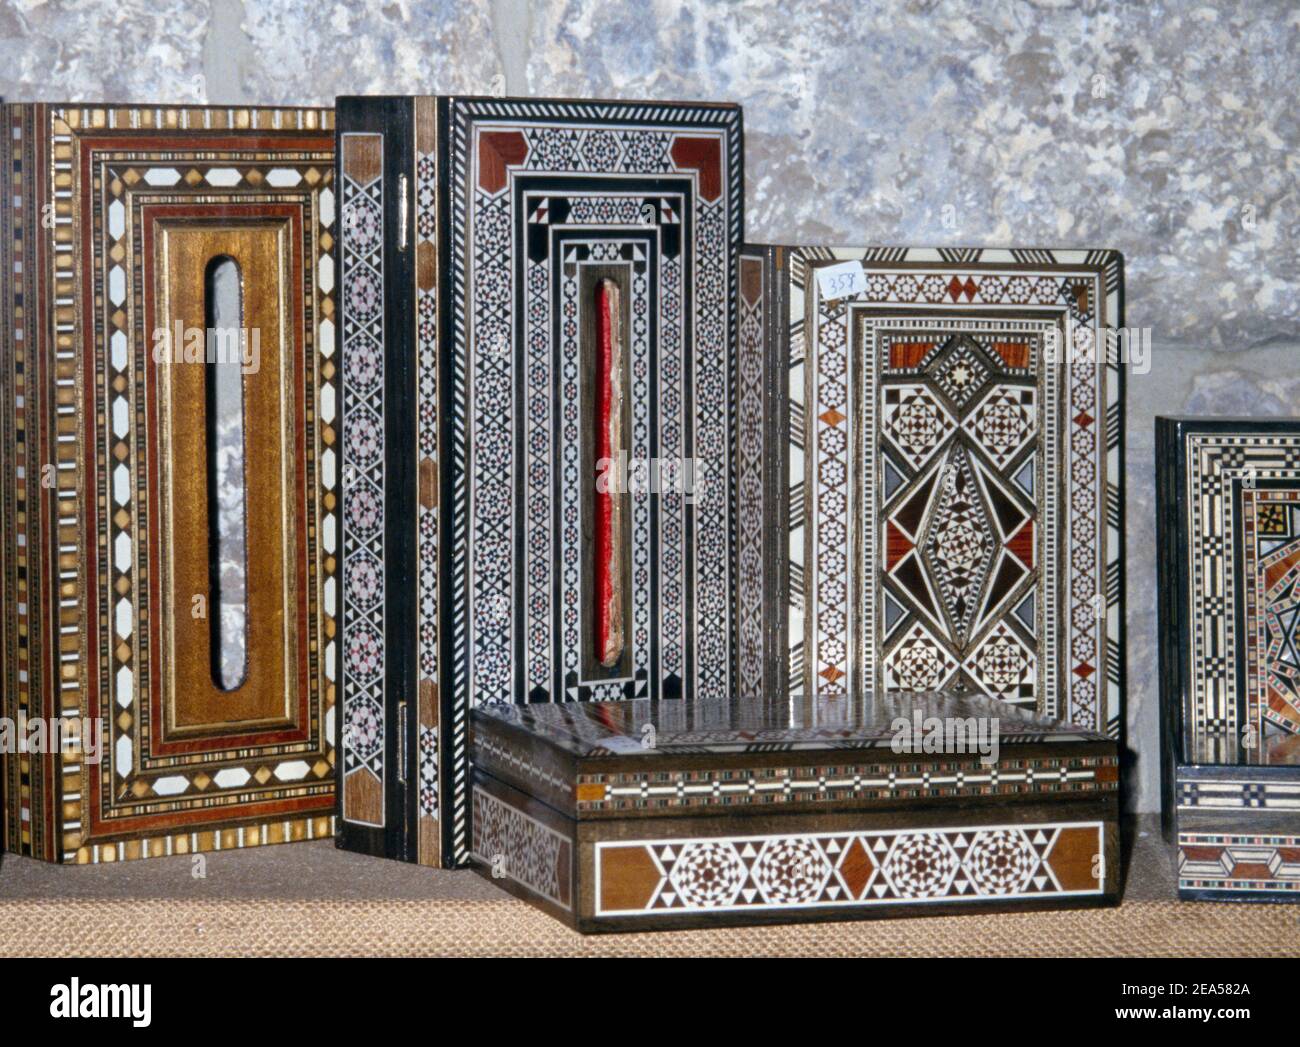 Beit Eddine Lebanon Crafts Inlaid Jewellery Boxes Stock Photo